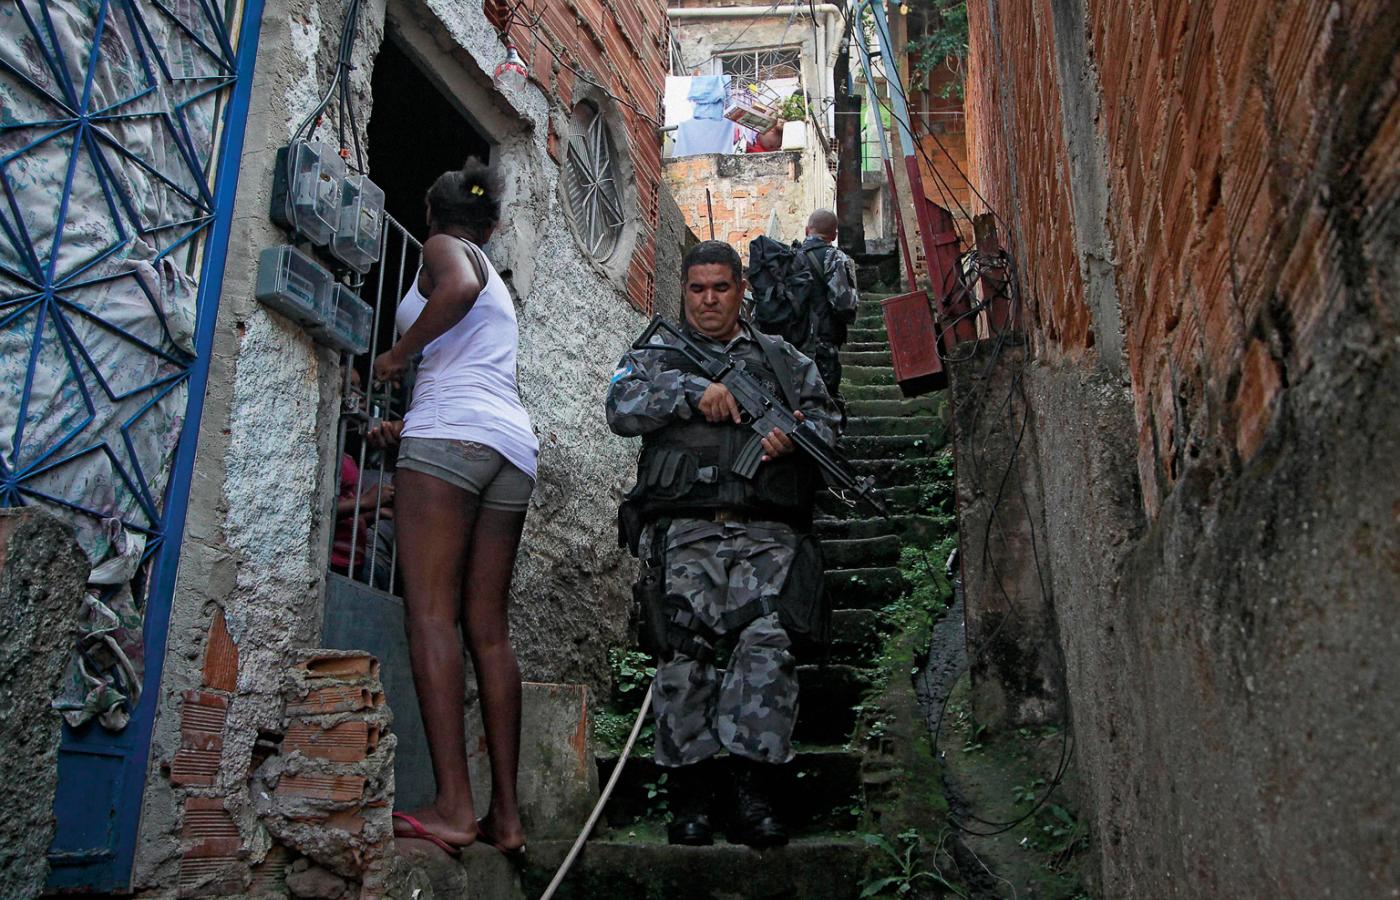 Patrol policji kontroluje fawele na przedmieściach Rio de Janeiro, lipiec 2012 r.